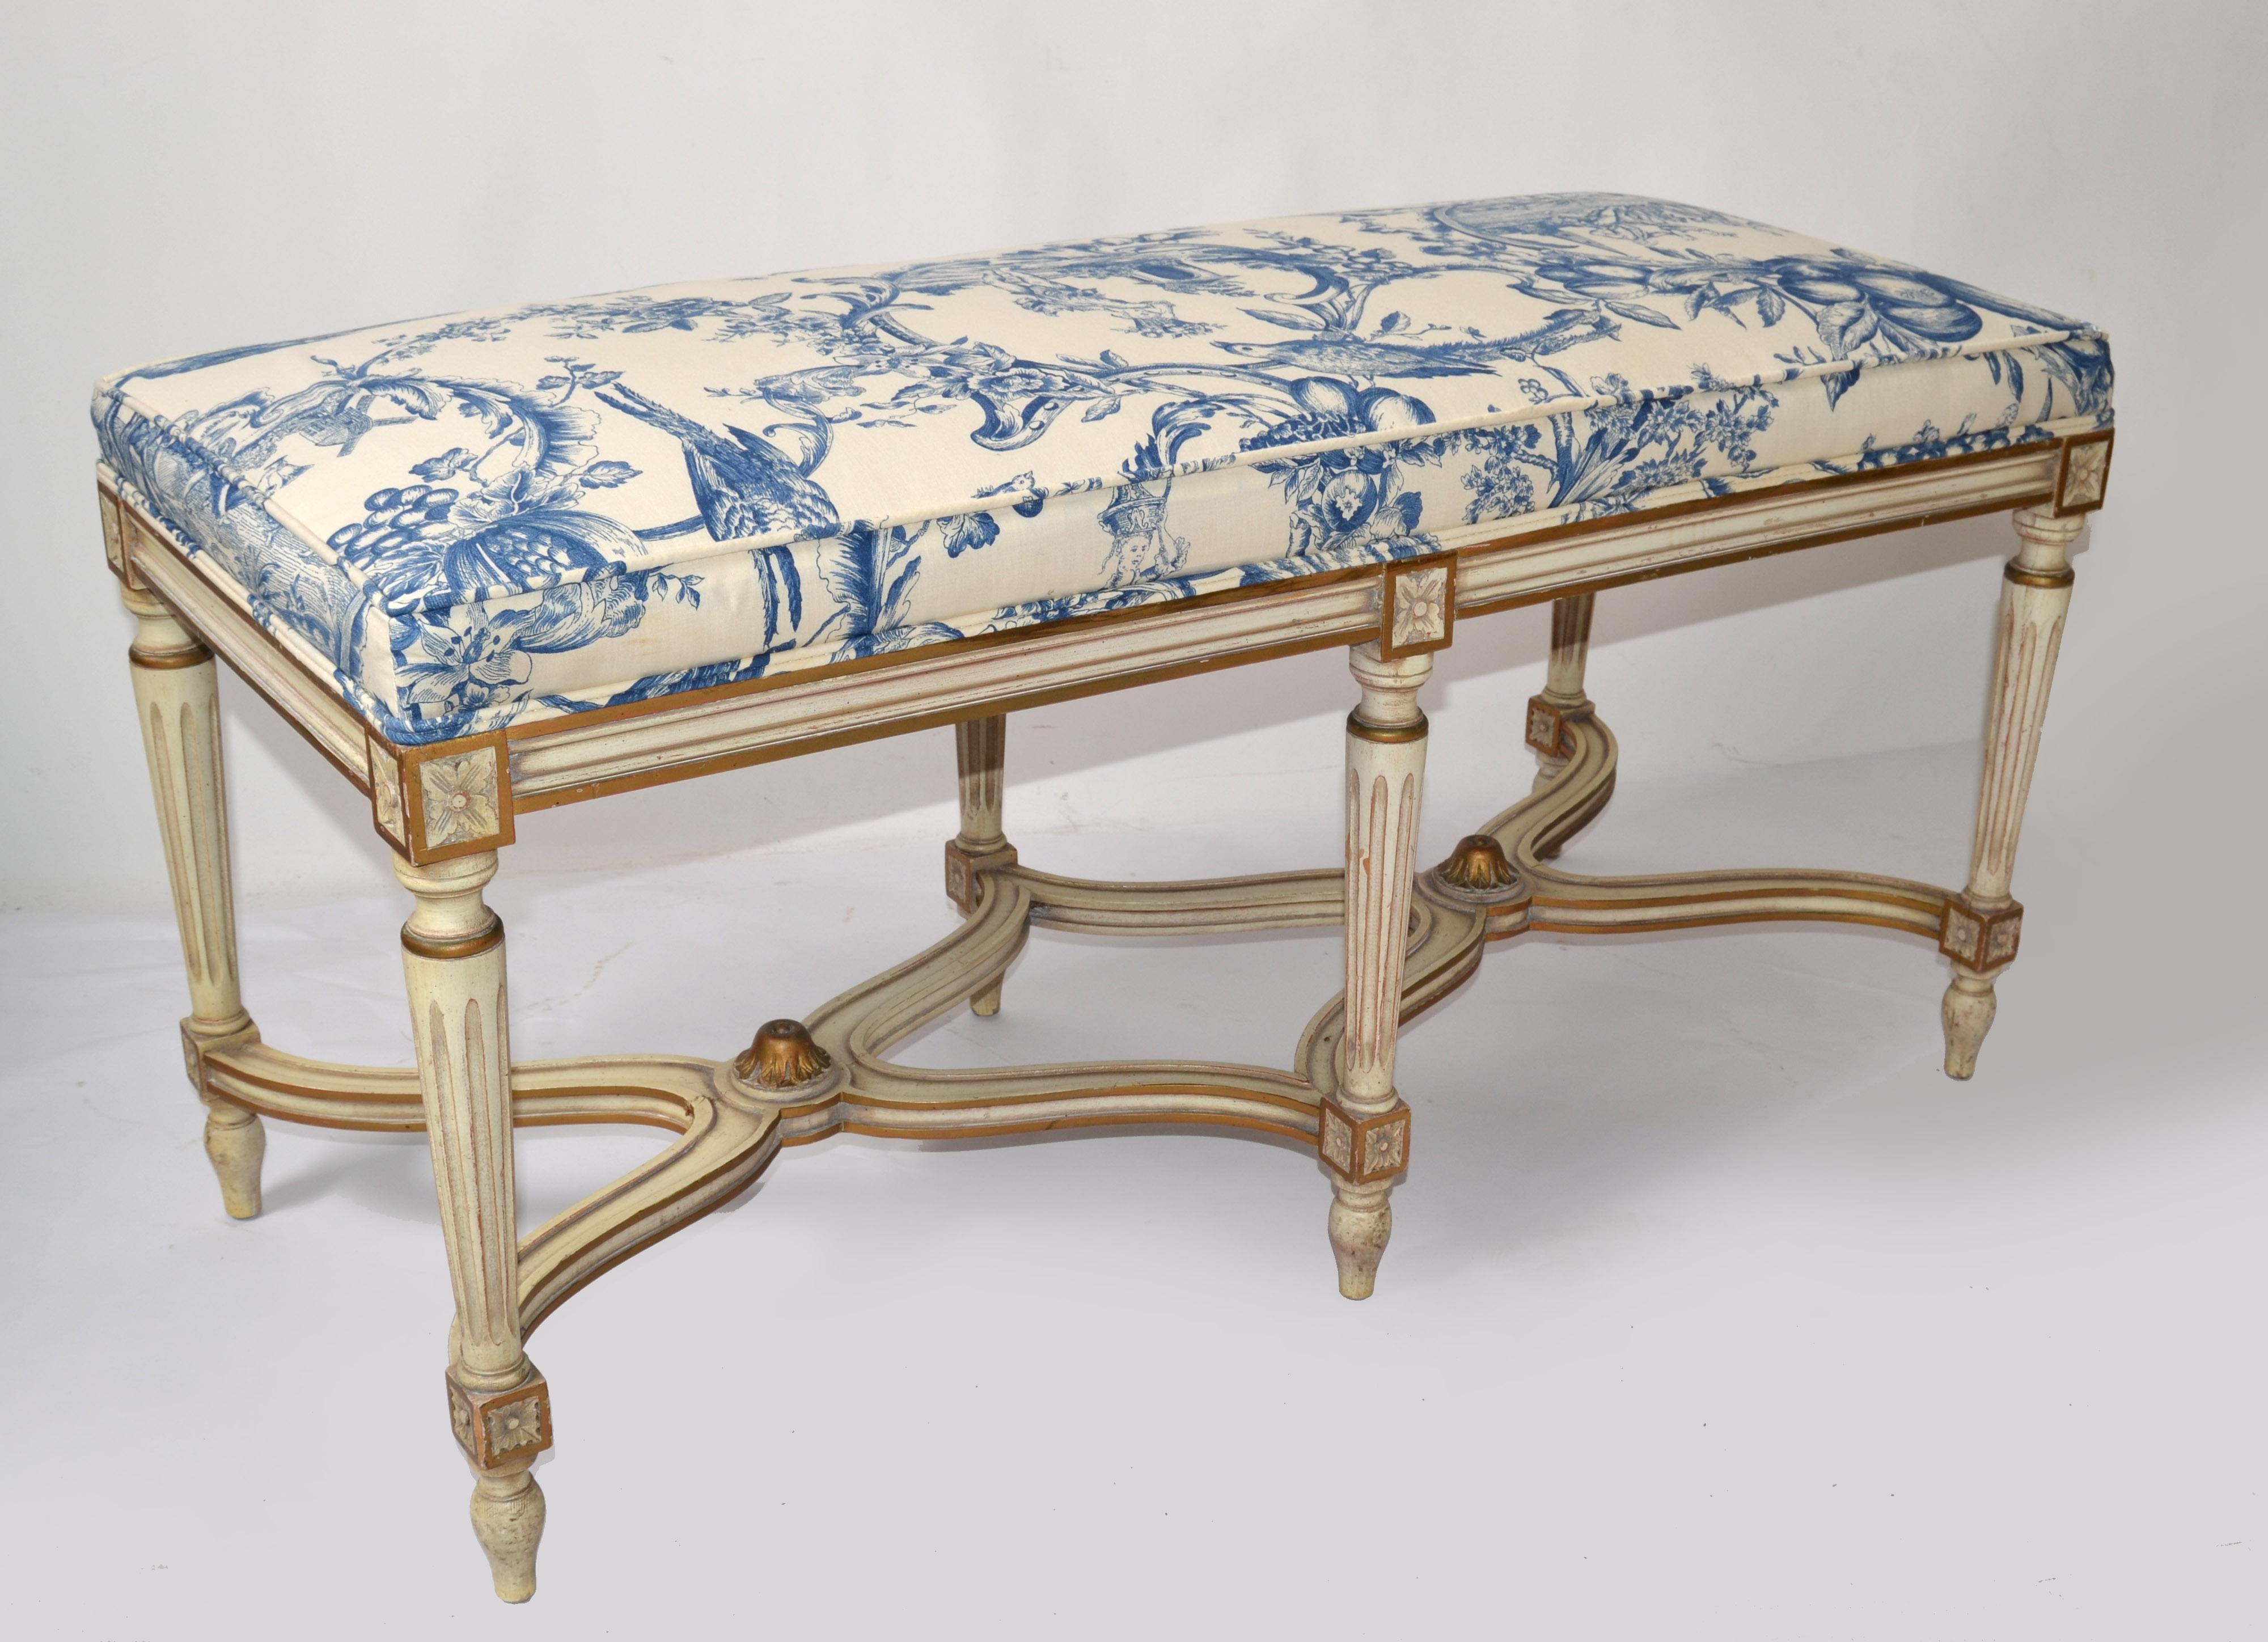 Banc Louis XVI exquis Karges Furniture Co. Tissu à motif bleu en bois dur sculpté à la main, fabriqué dans l'Indiana, aux États-Unis. 
Le tablier, les montants et les pieds de ce gracieux banc de style français sont tous sculptés à la main. Il est